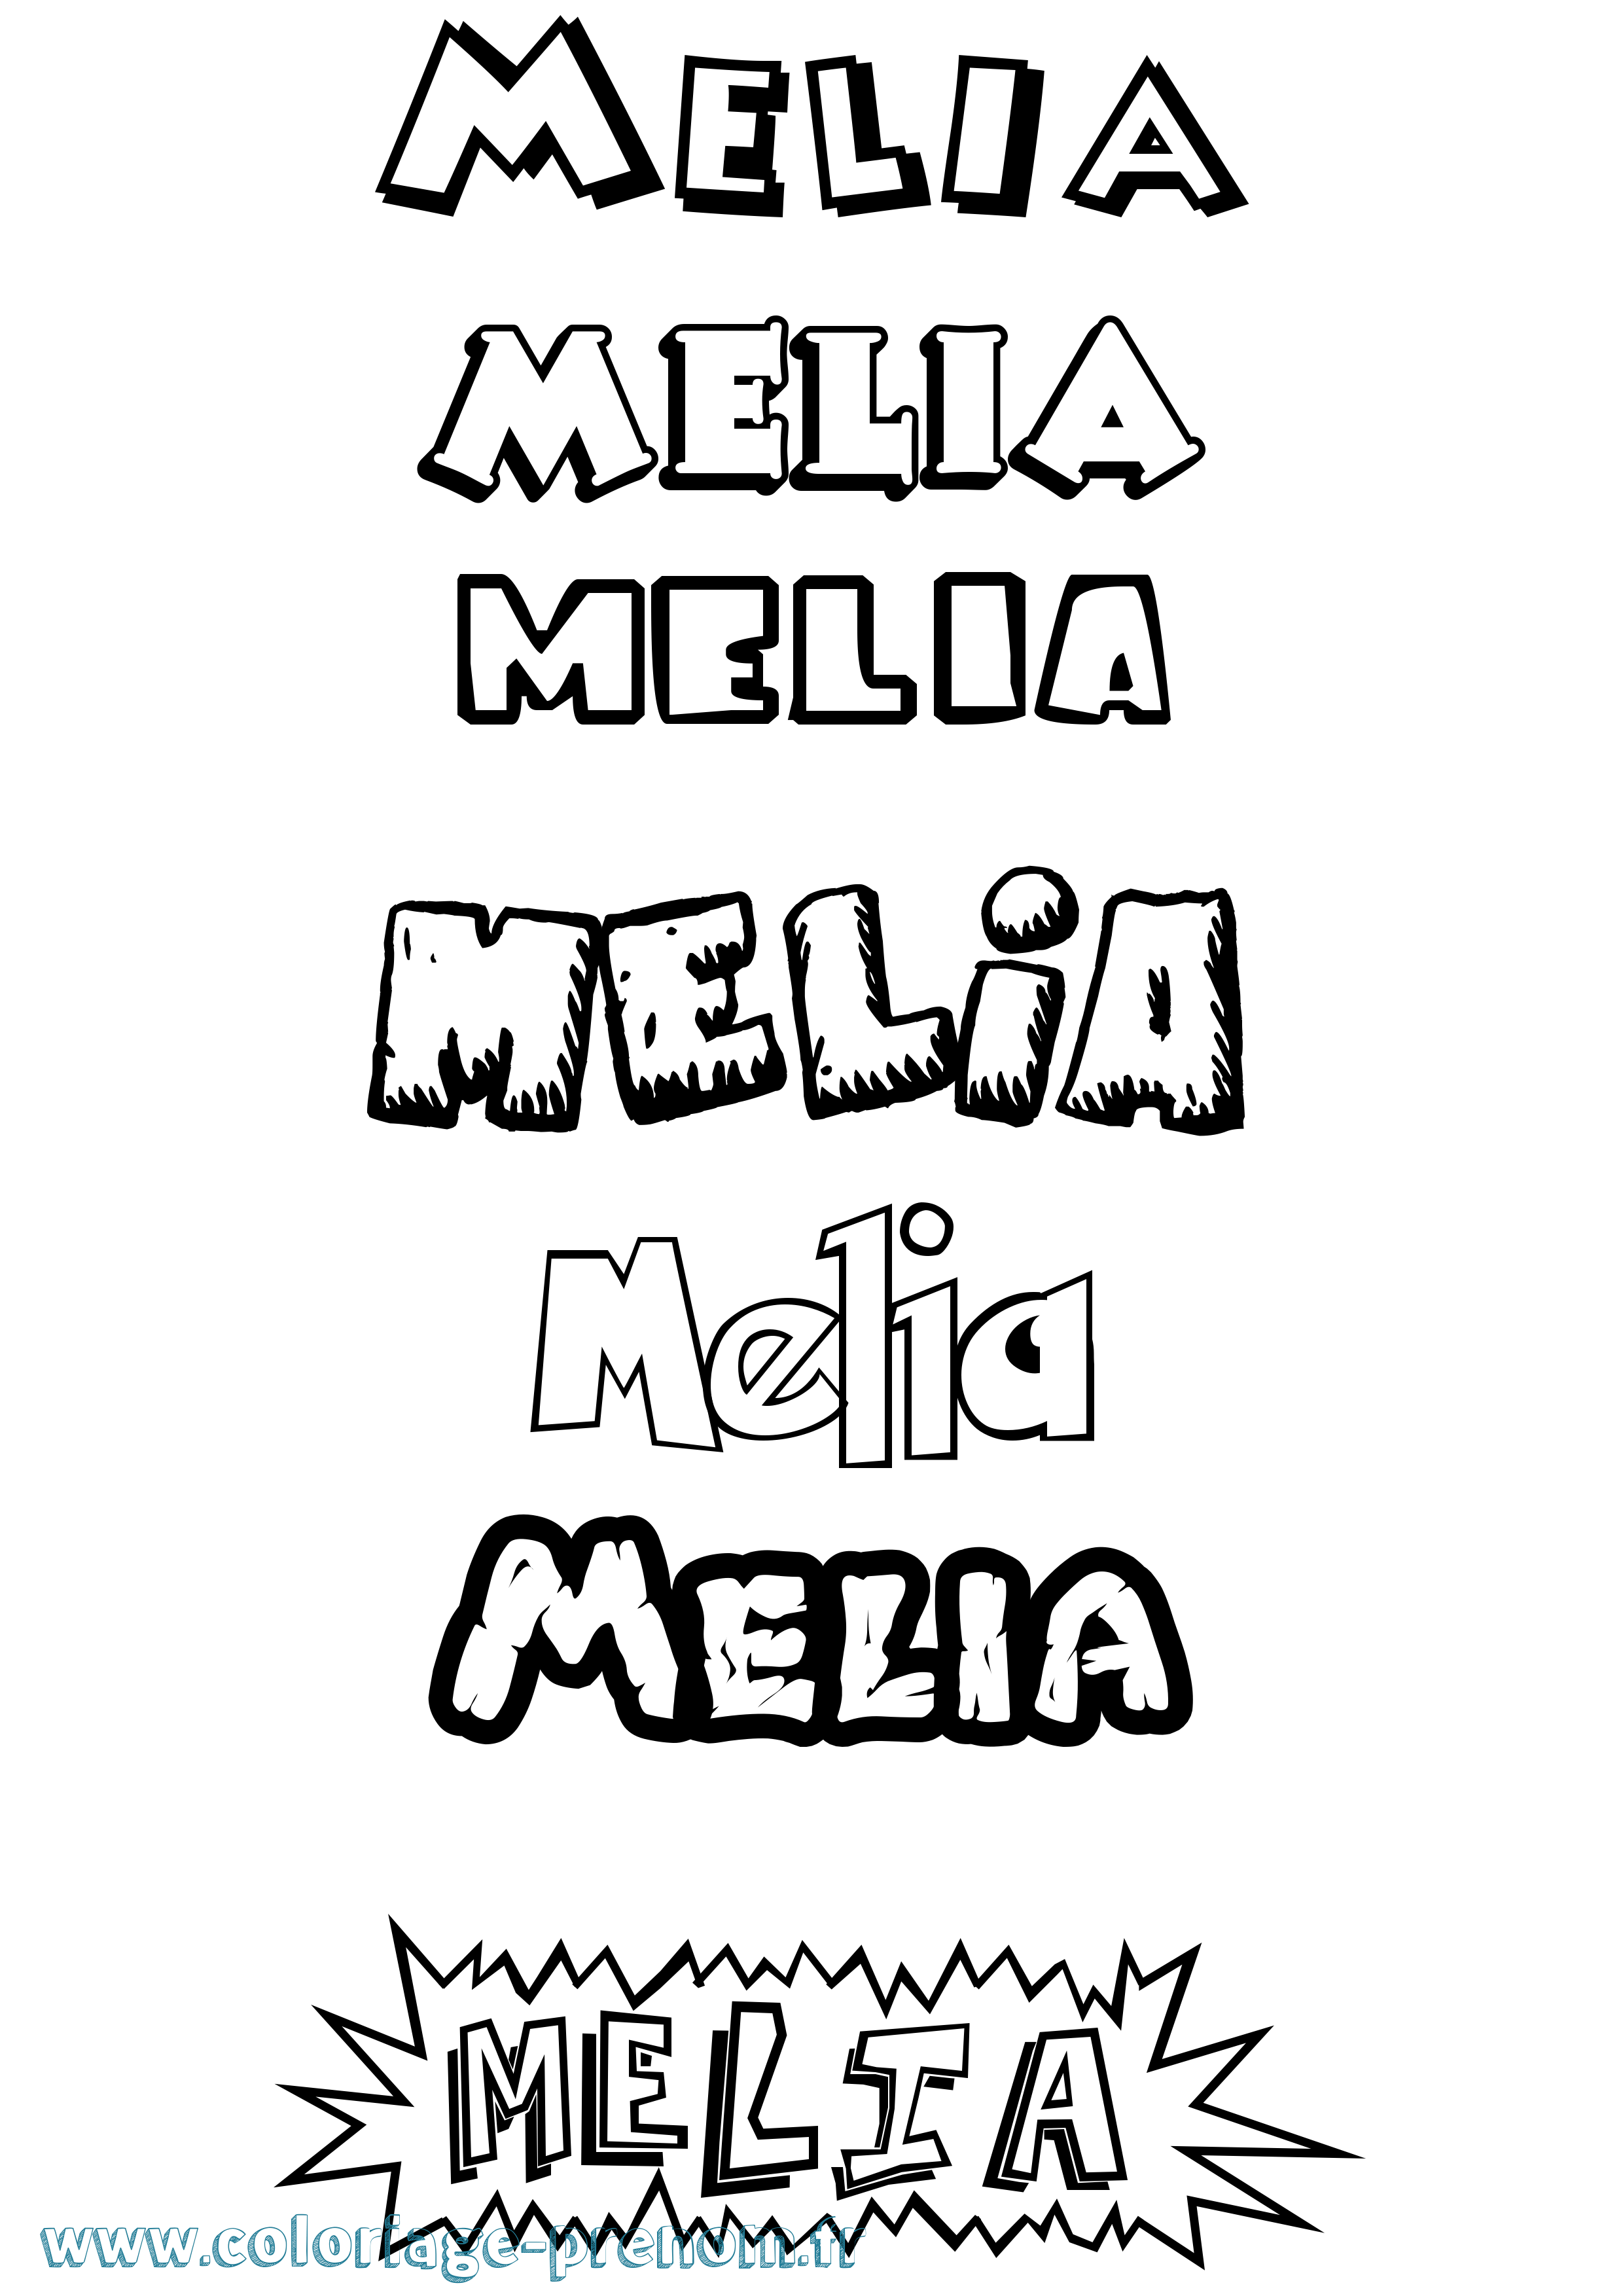 Coloriage prénom Melia